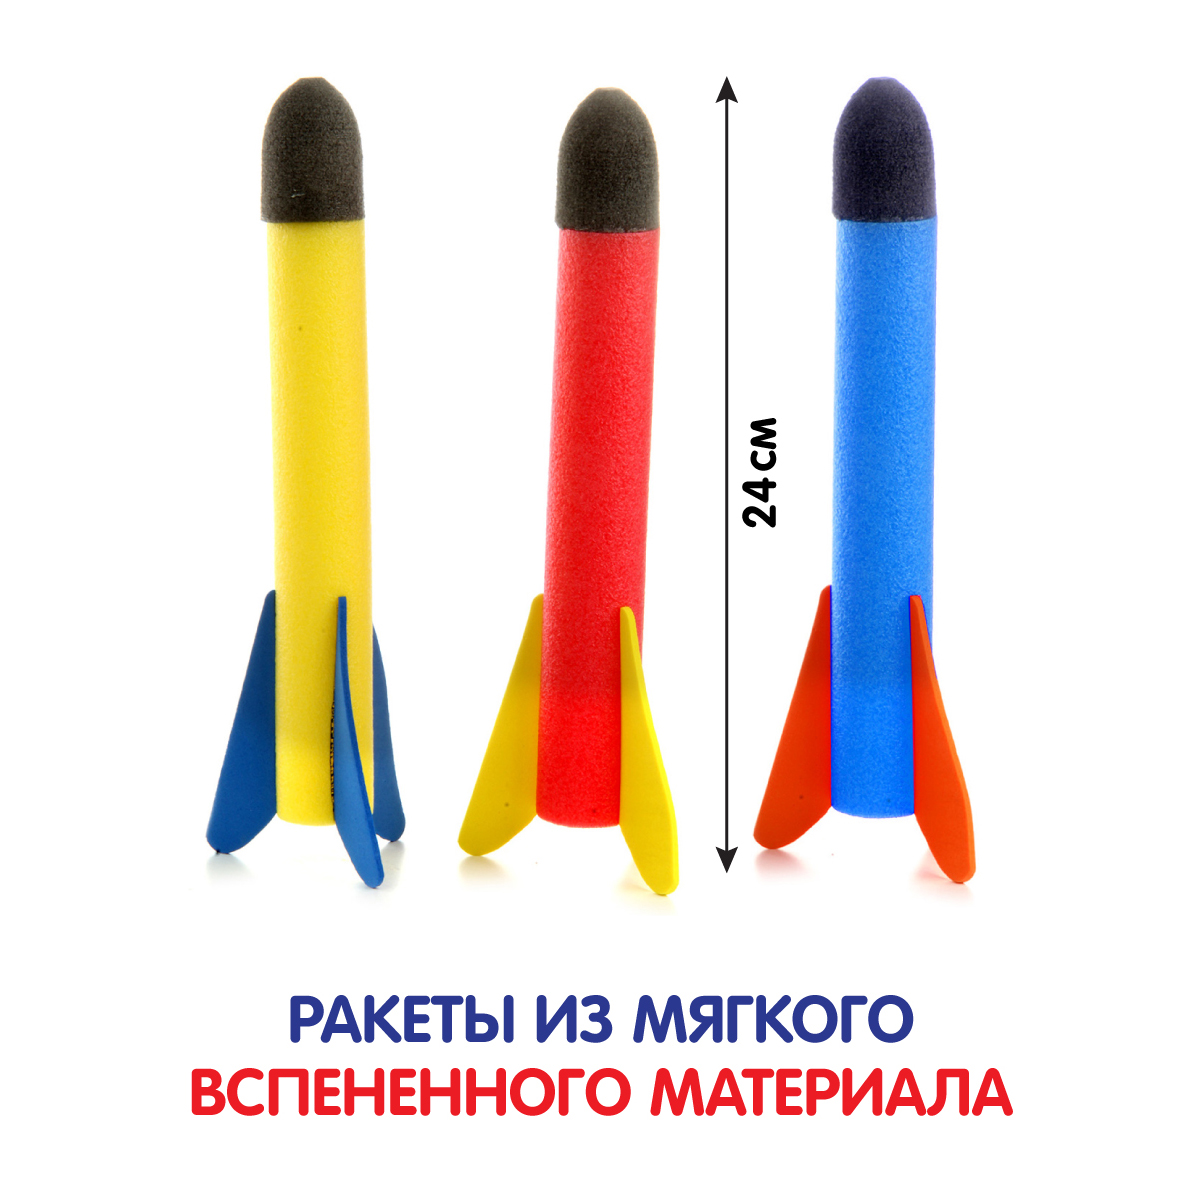 Летающая игрушка Veld Co ракетная установка с запуском - фото 2